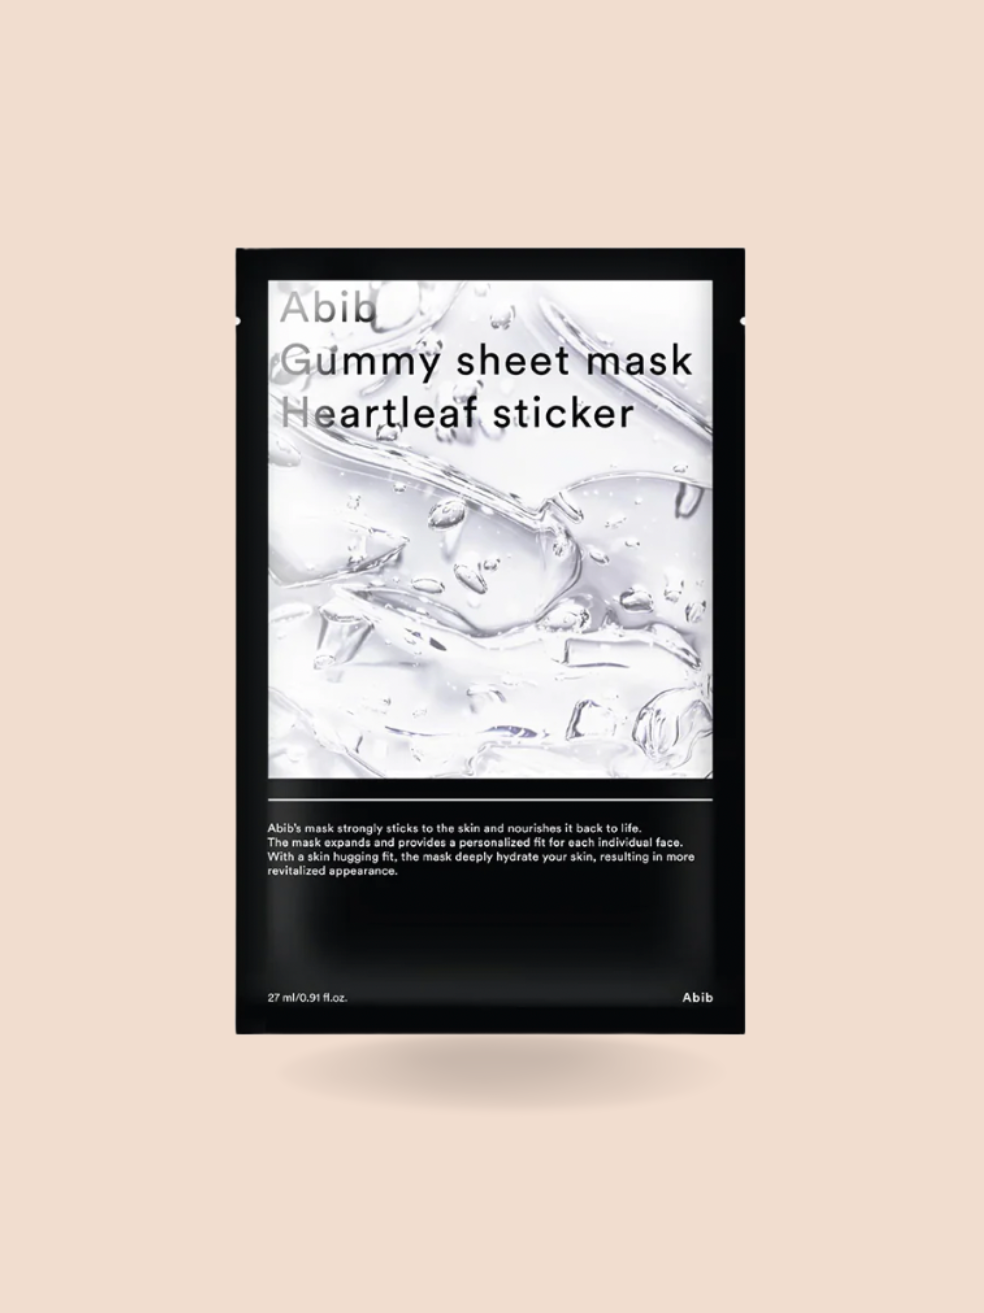 Abib Gummy Sheet Mask Heartleaf Sticker